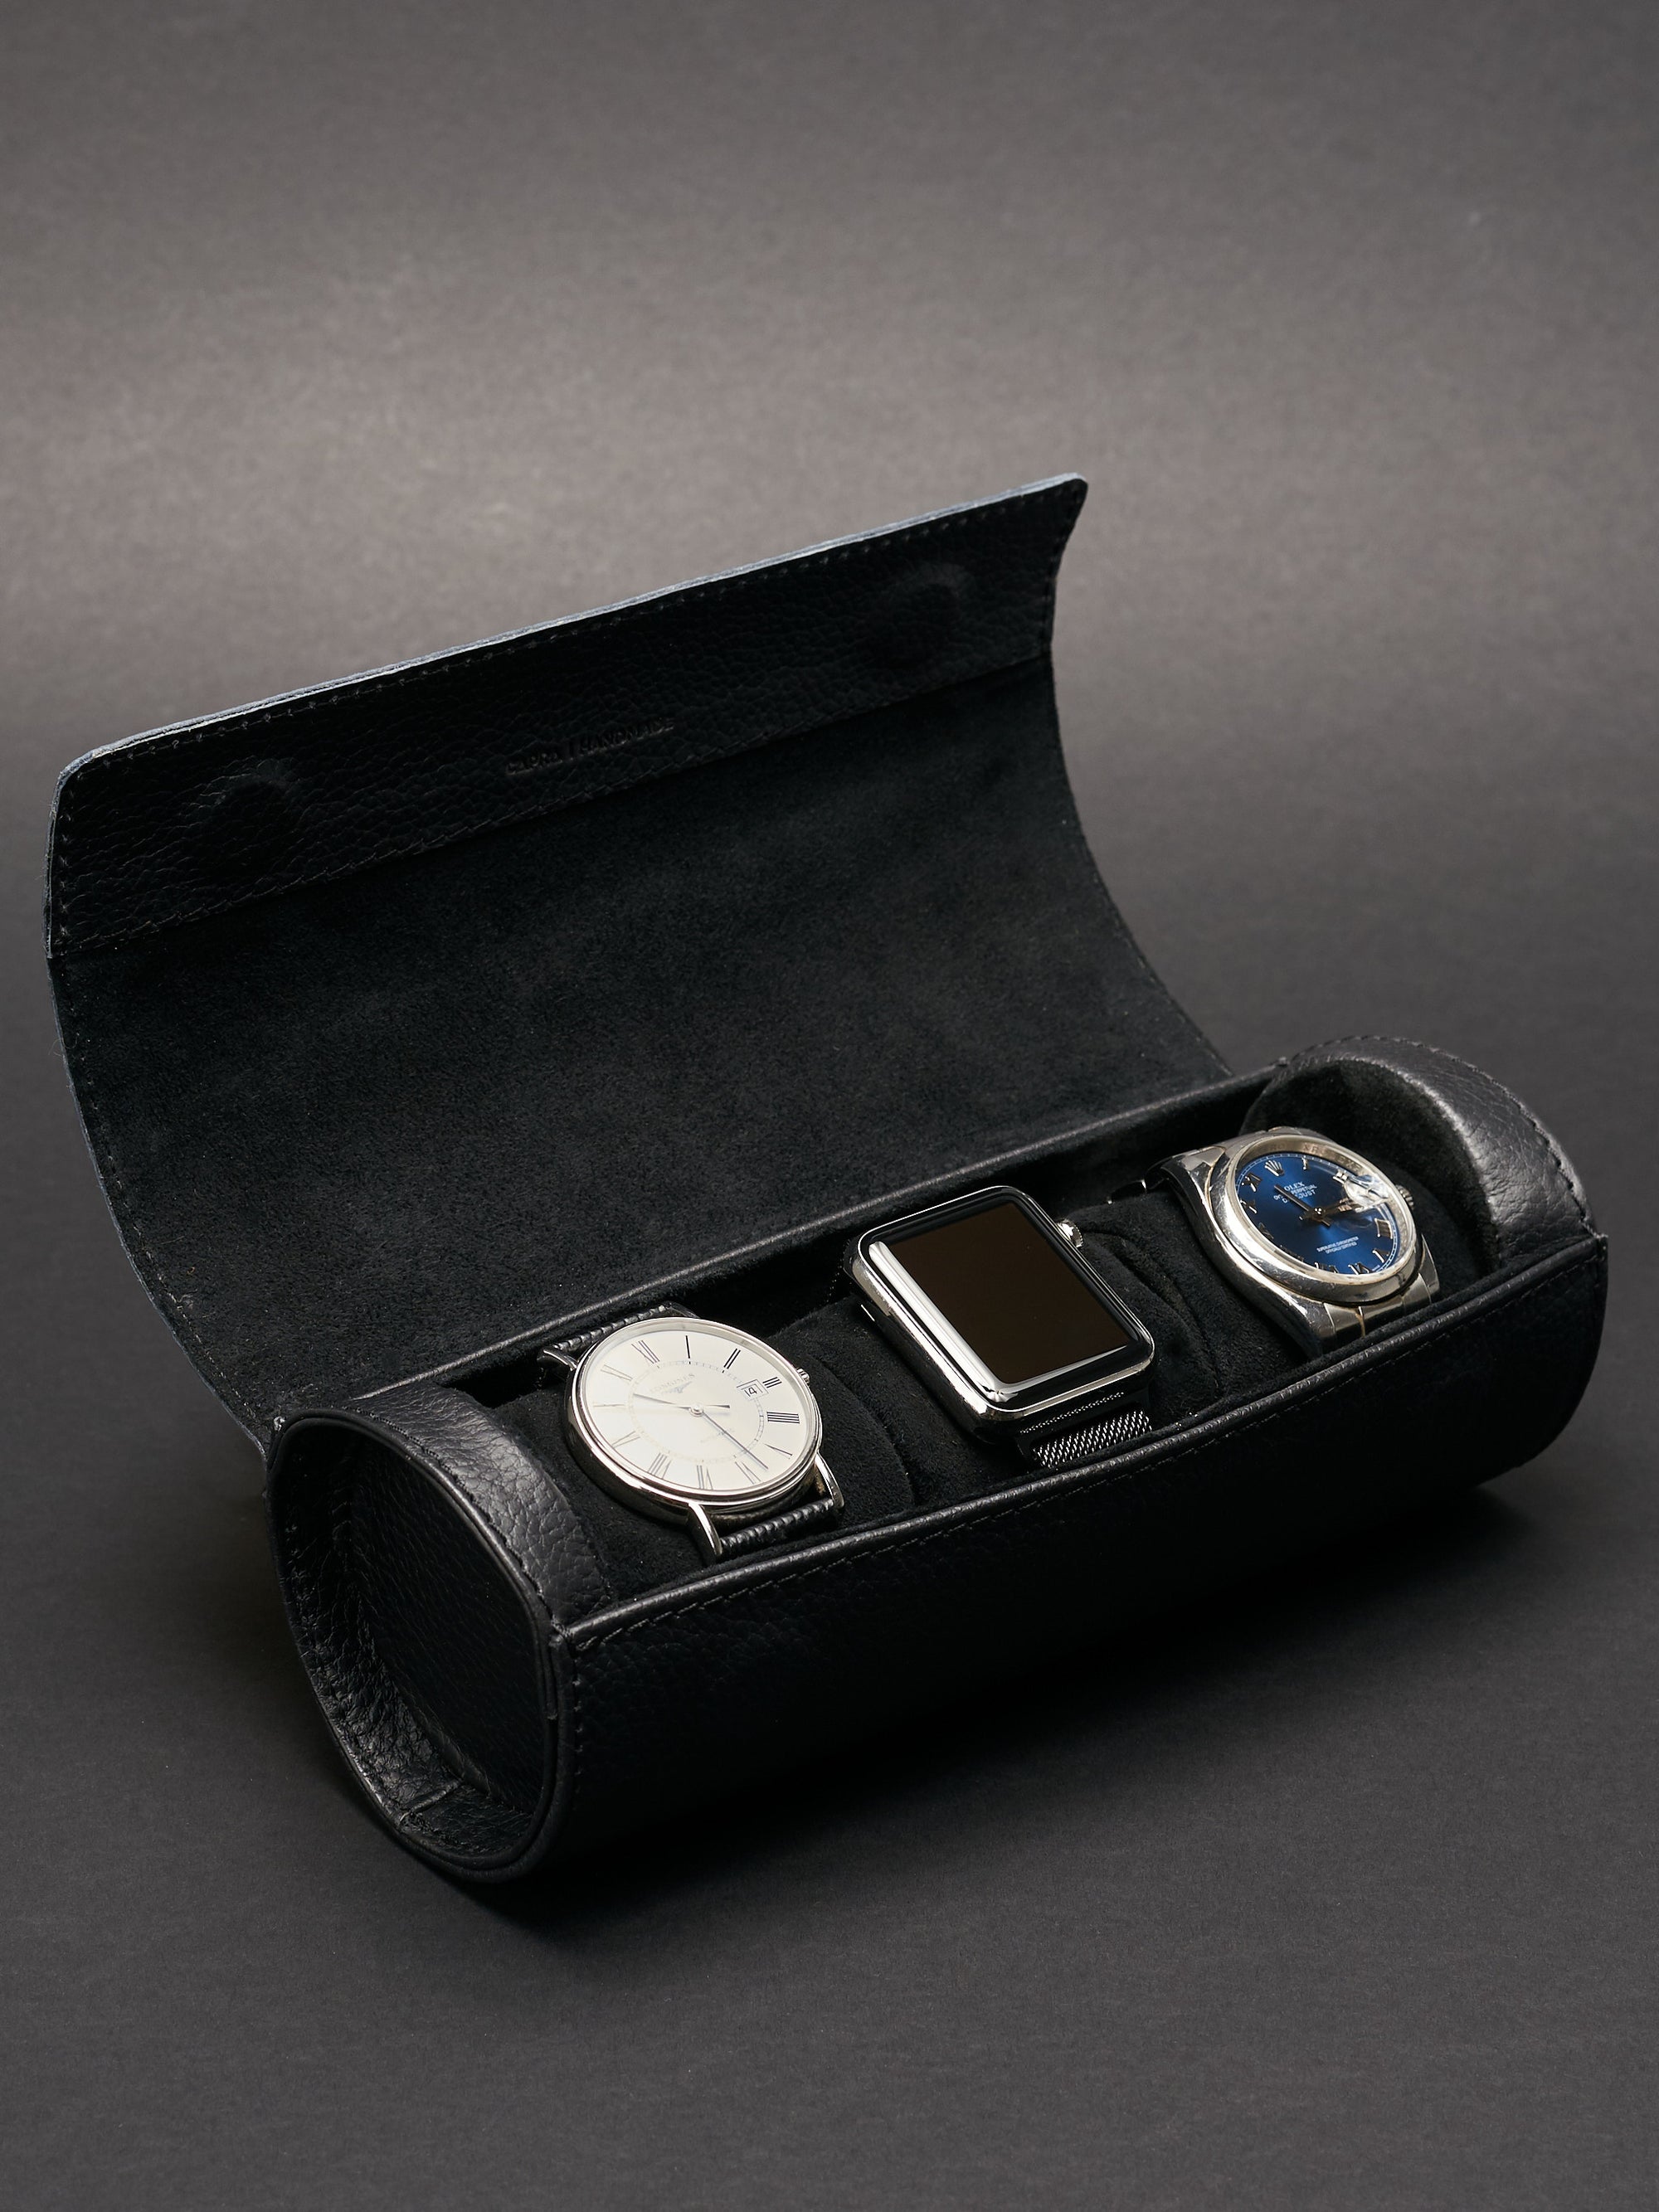 Rolex watch travel case black